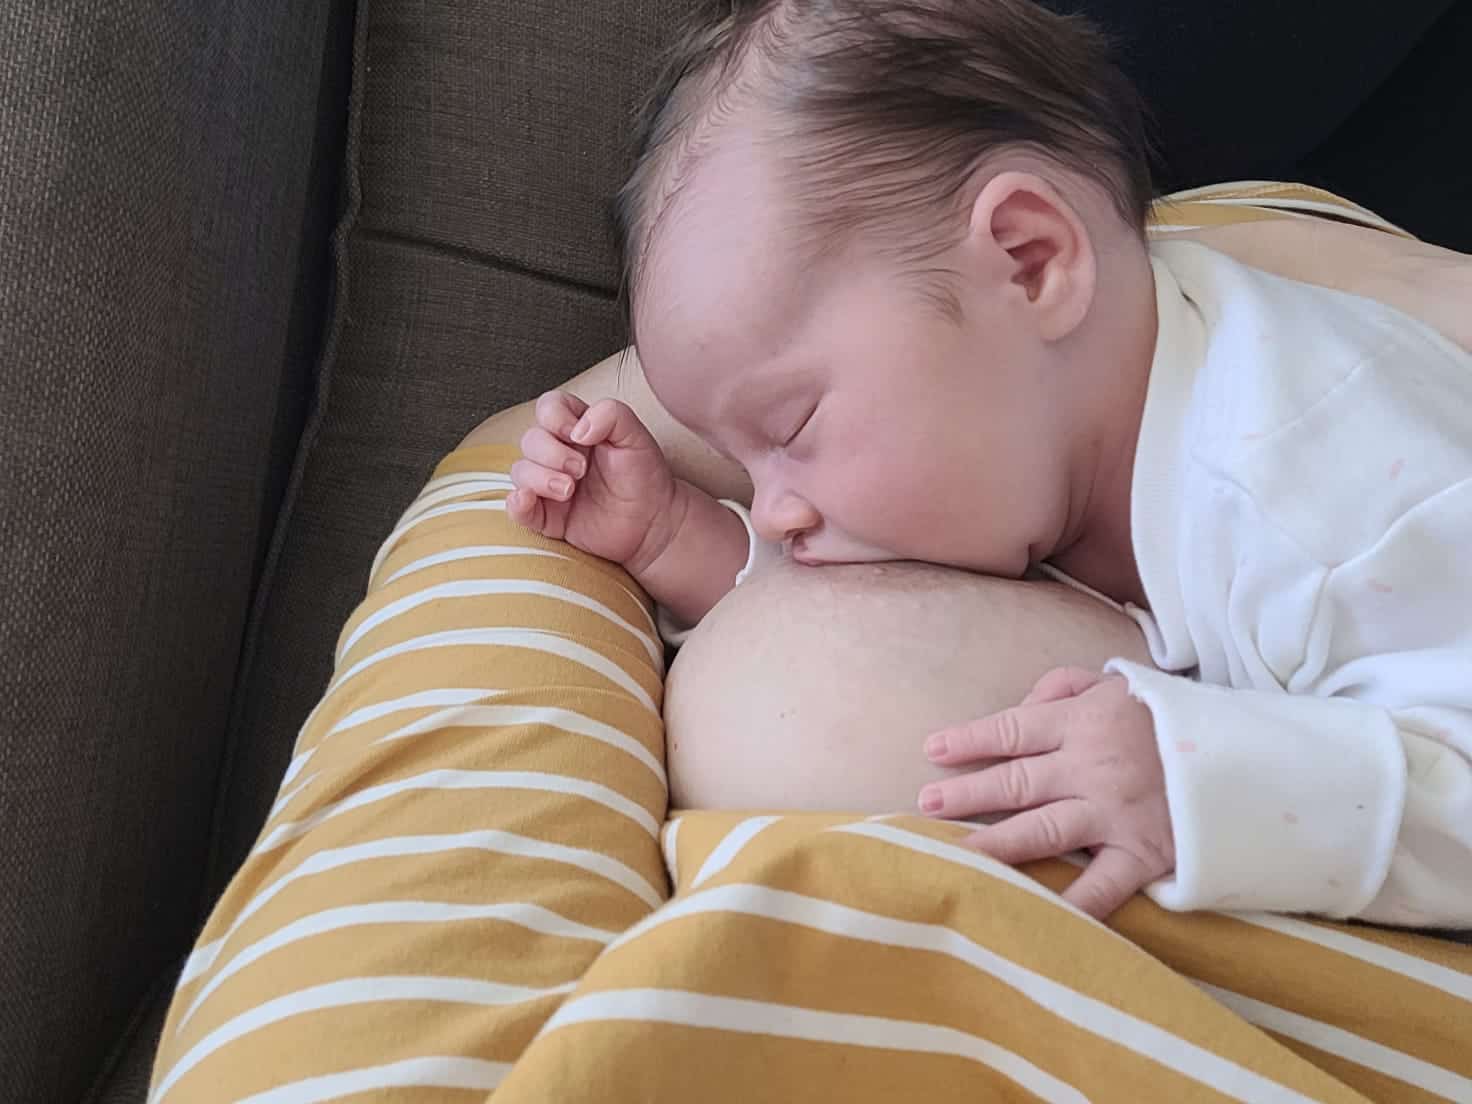 Breastfeeding with Big Boobs